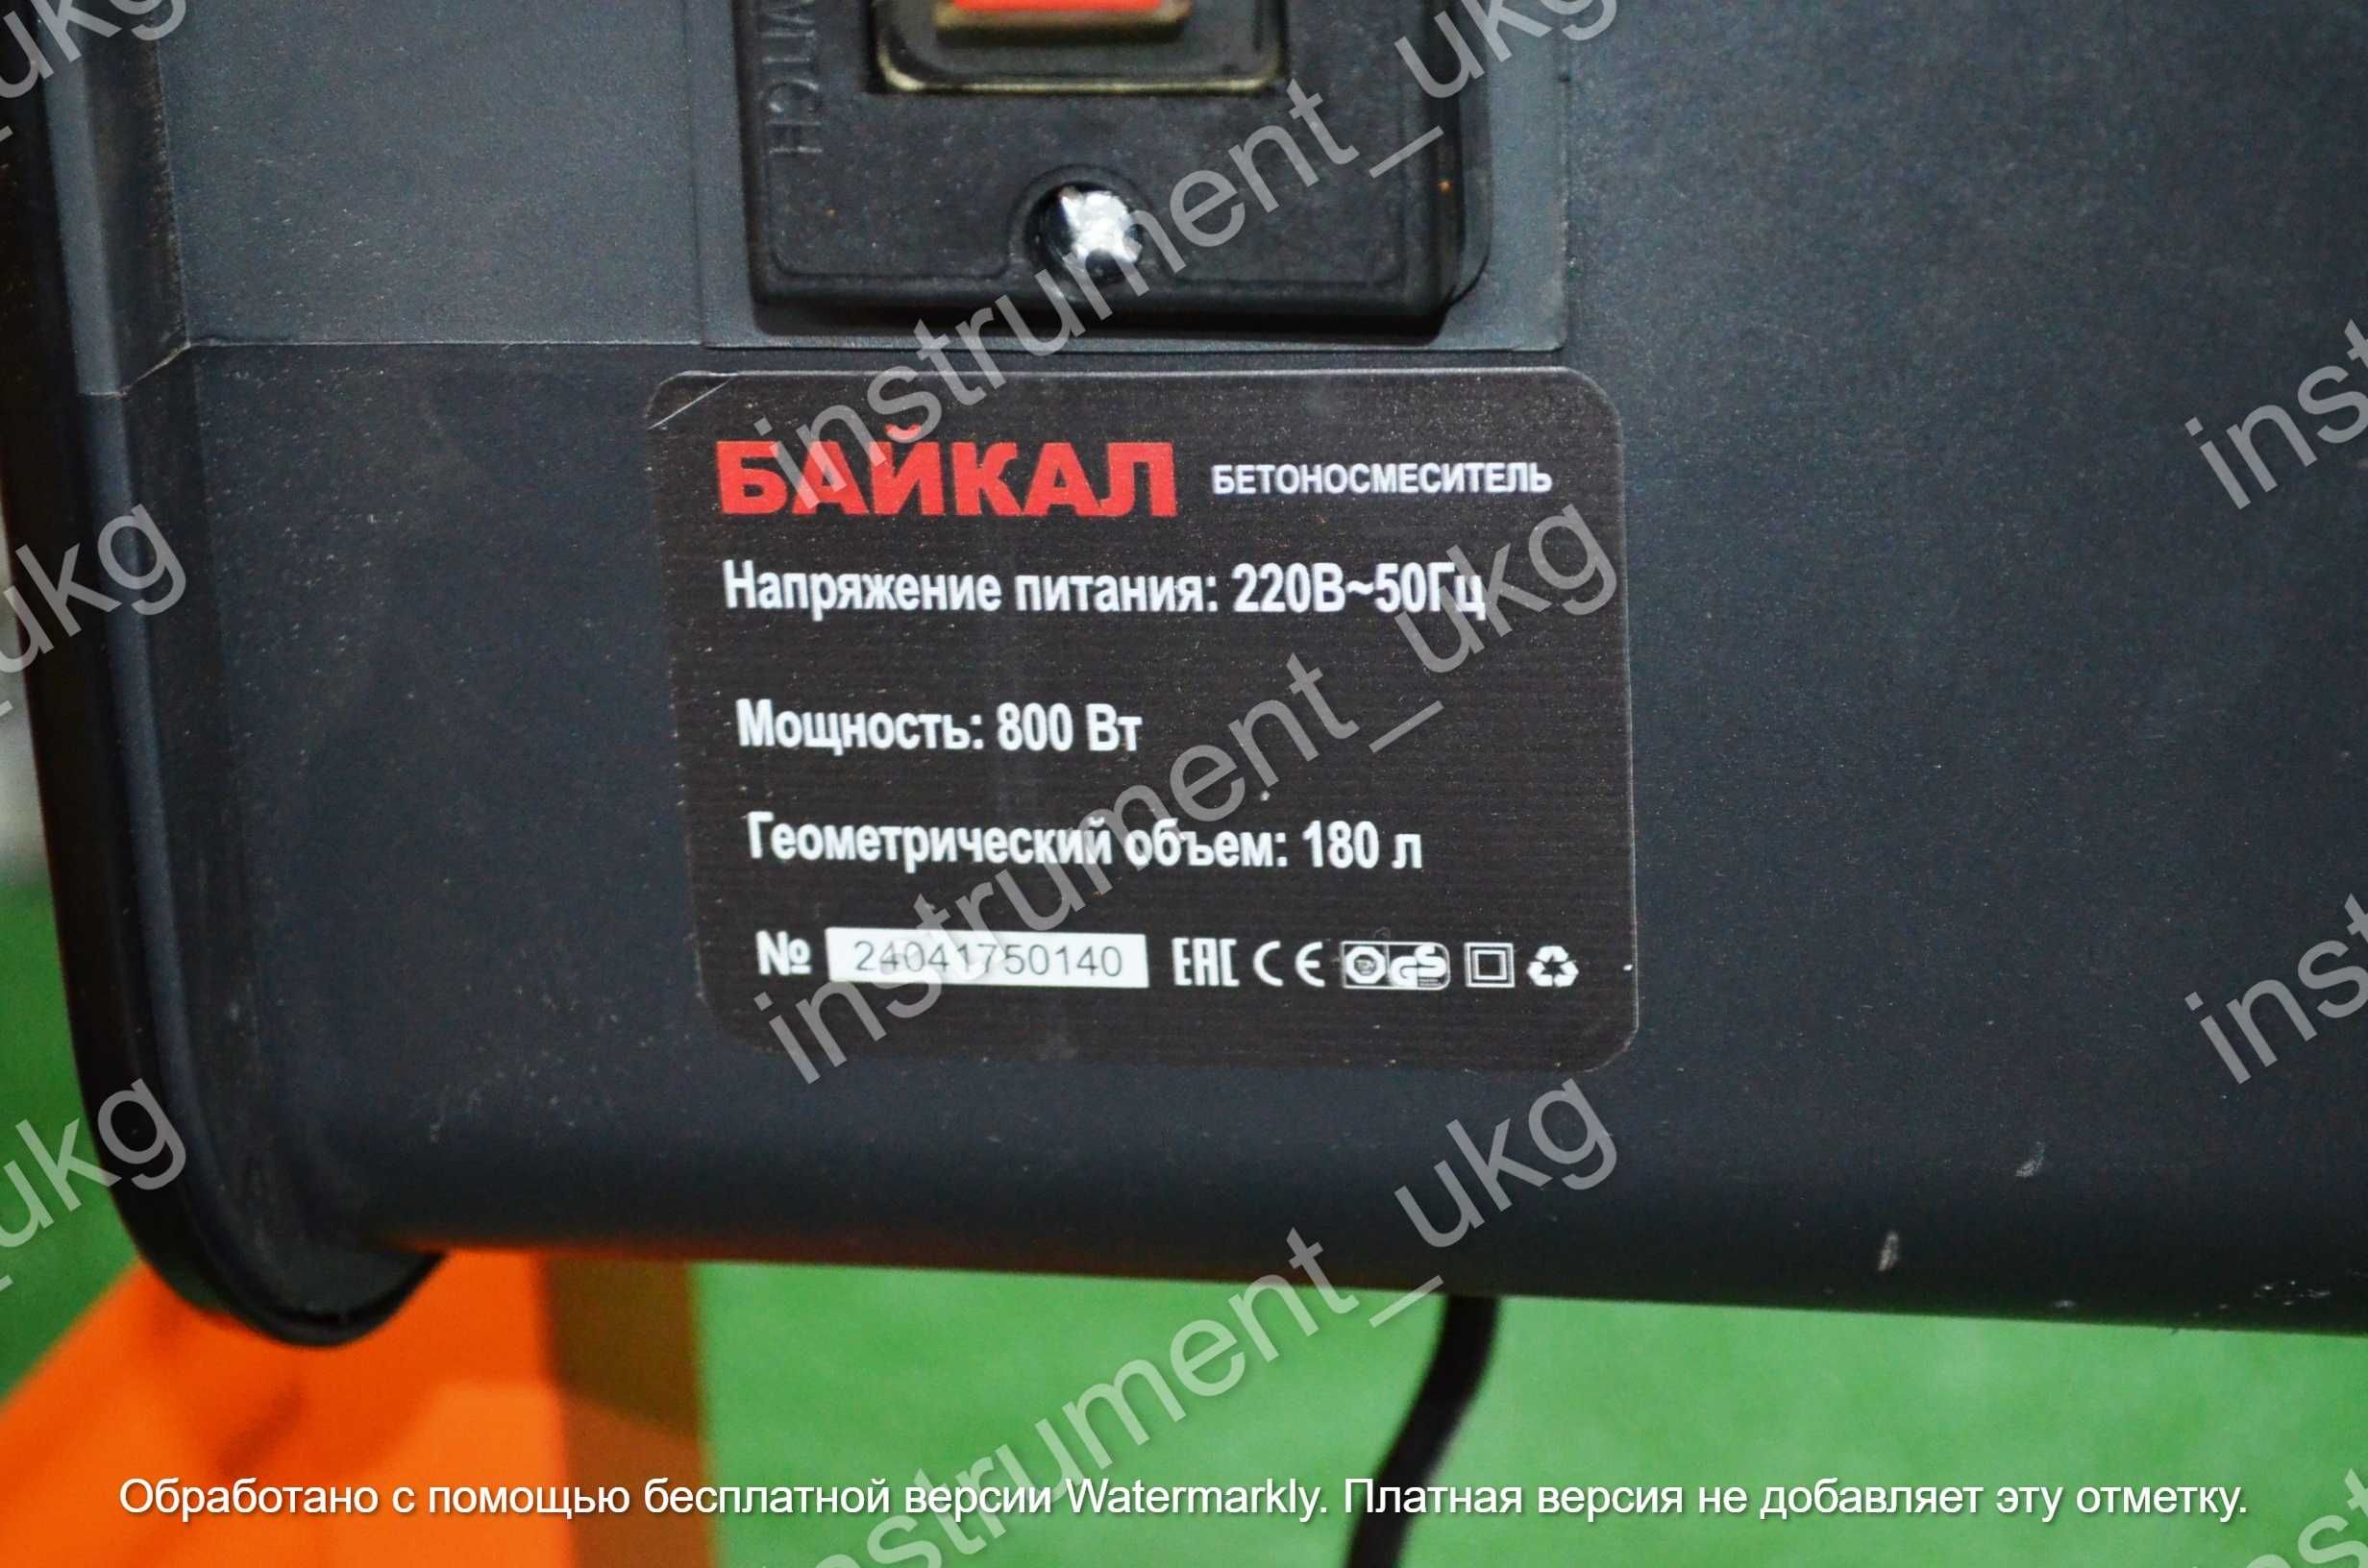 Продам бетоносмеситель Байкал 180 литров (бетономешалка)